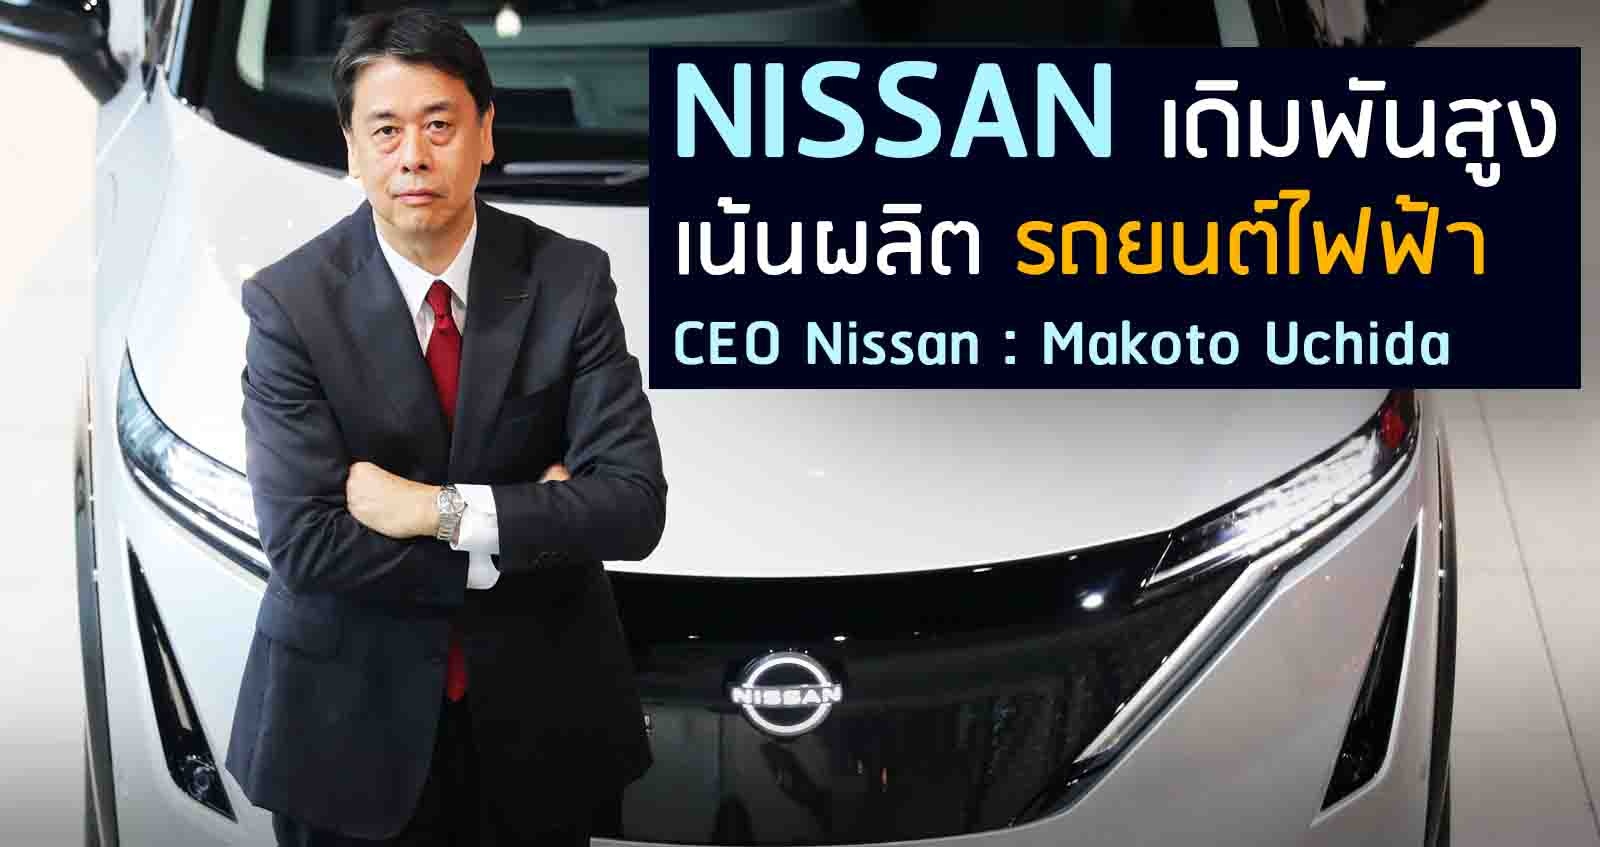 NISSAN เดิมพันสูง เน้นผลิตรถยนต์ไฟฟ้า CEO นิสสันกล่าว